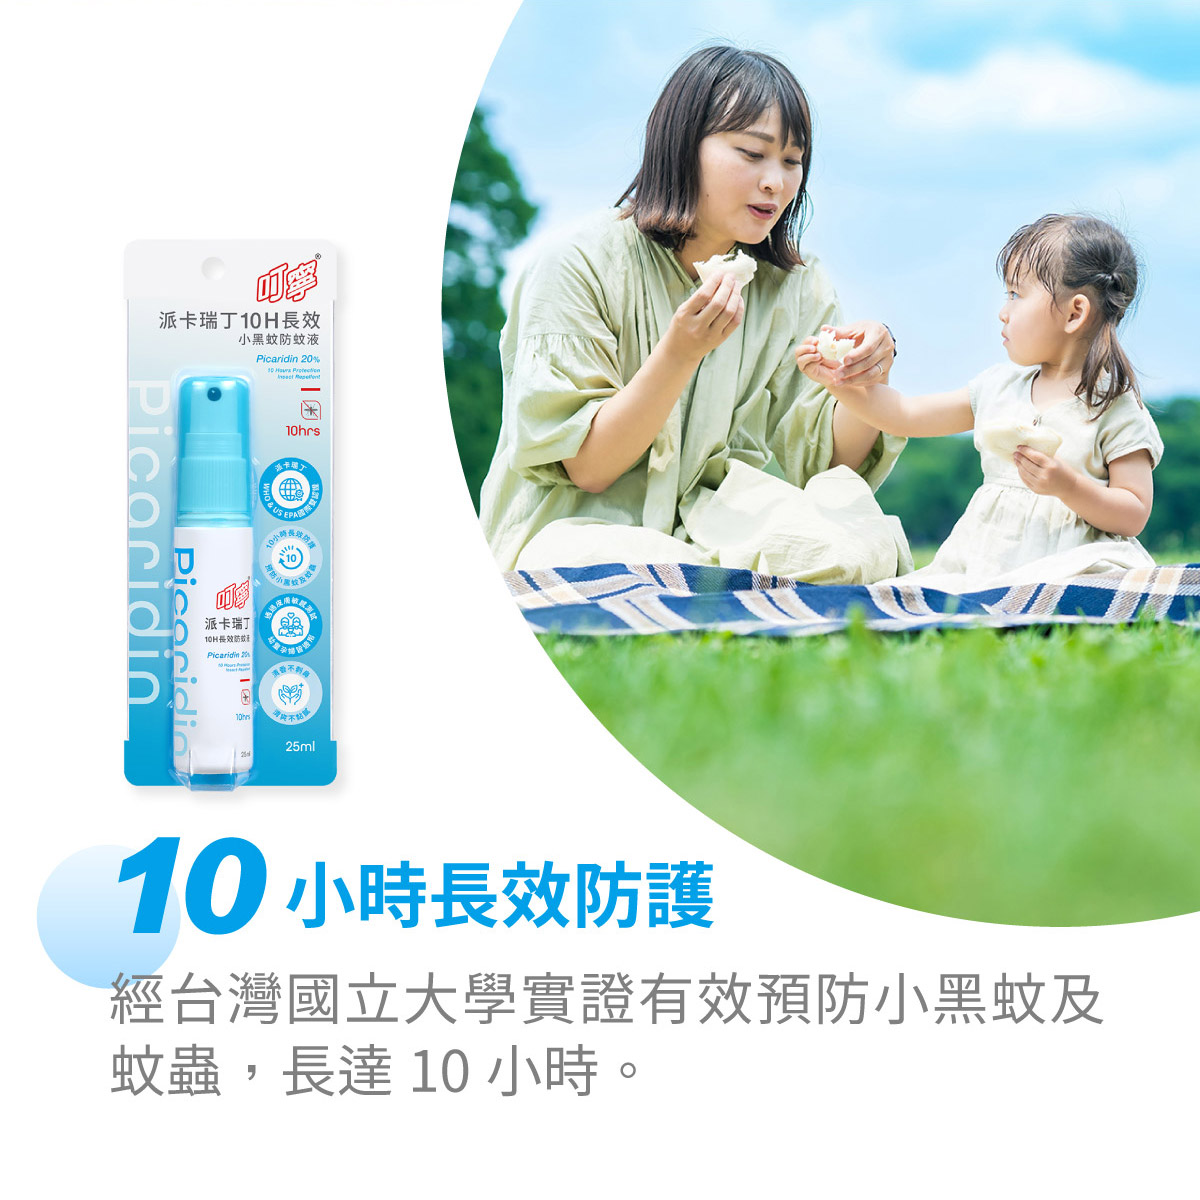 台灣國立大學研試驗證實10小時有效預防蚊蟲叮咬